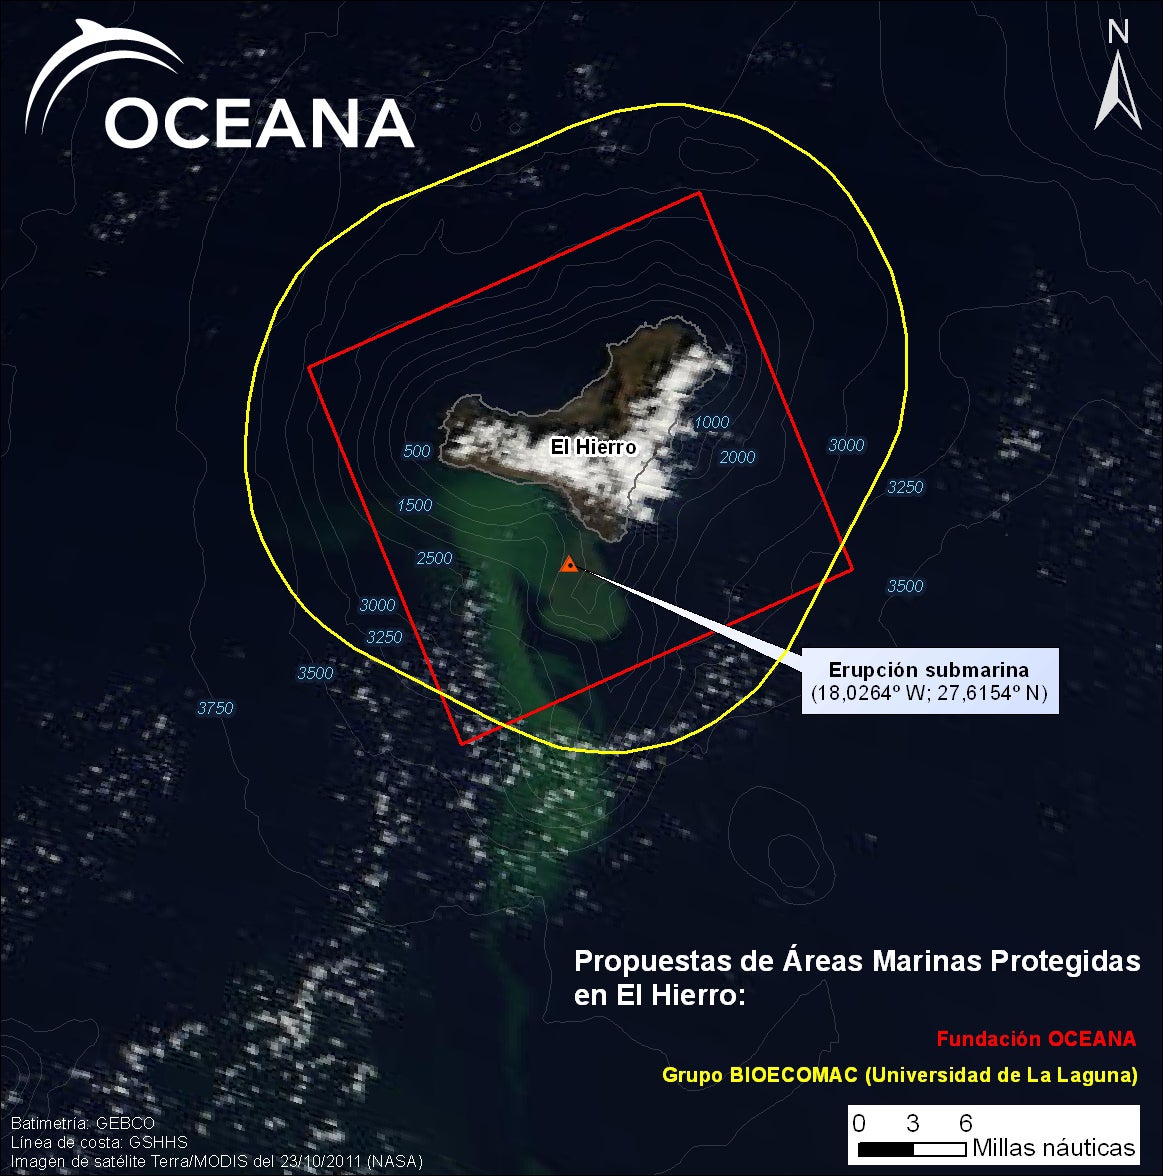 Propuestas de Áreas Marinas Protegidas en El Hierro © OCEANA